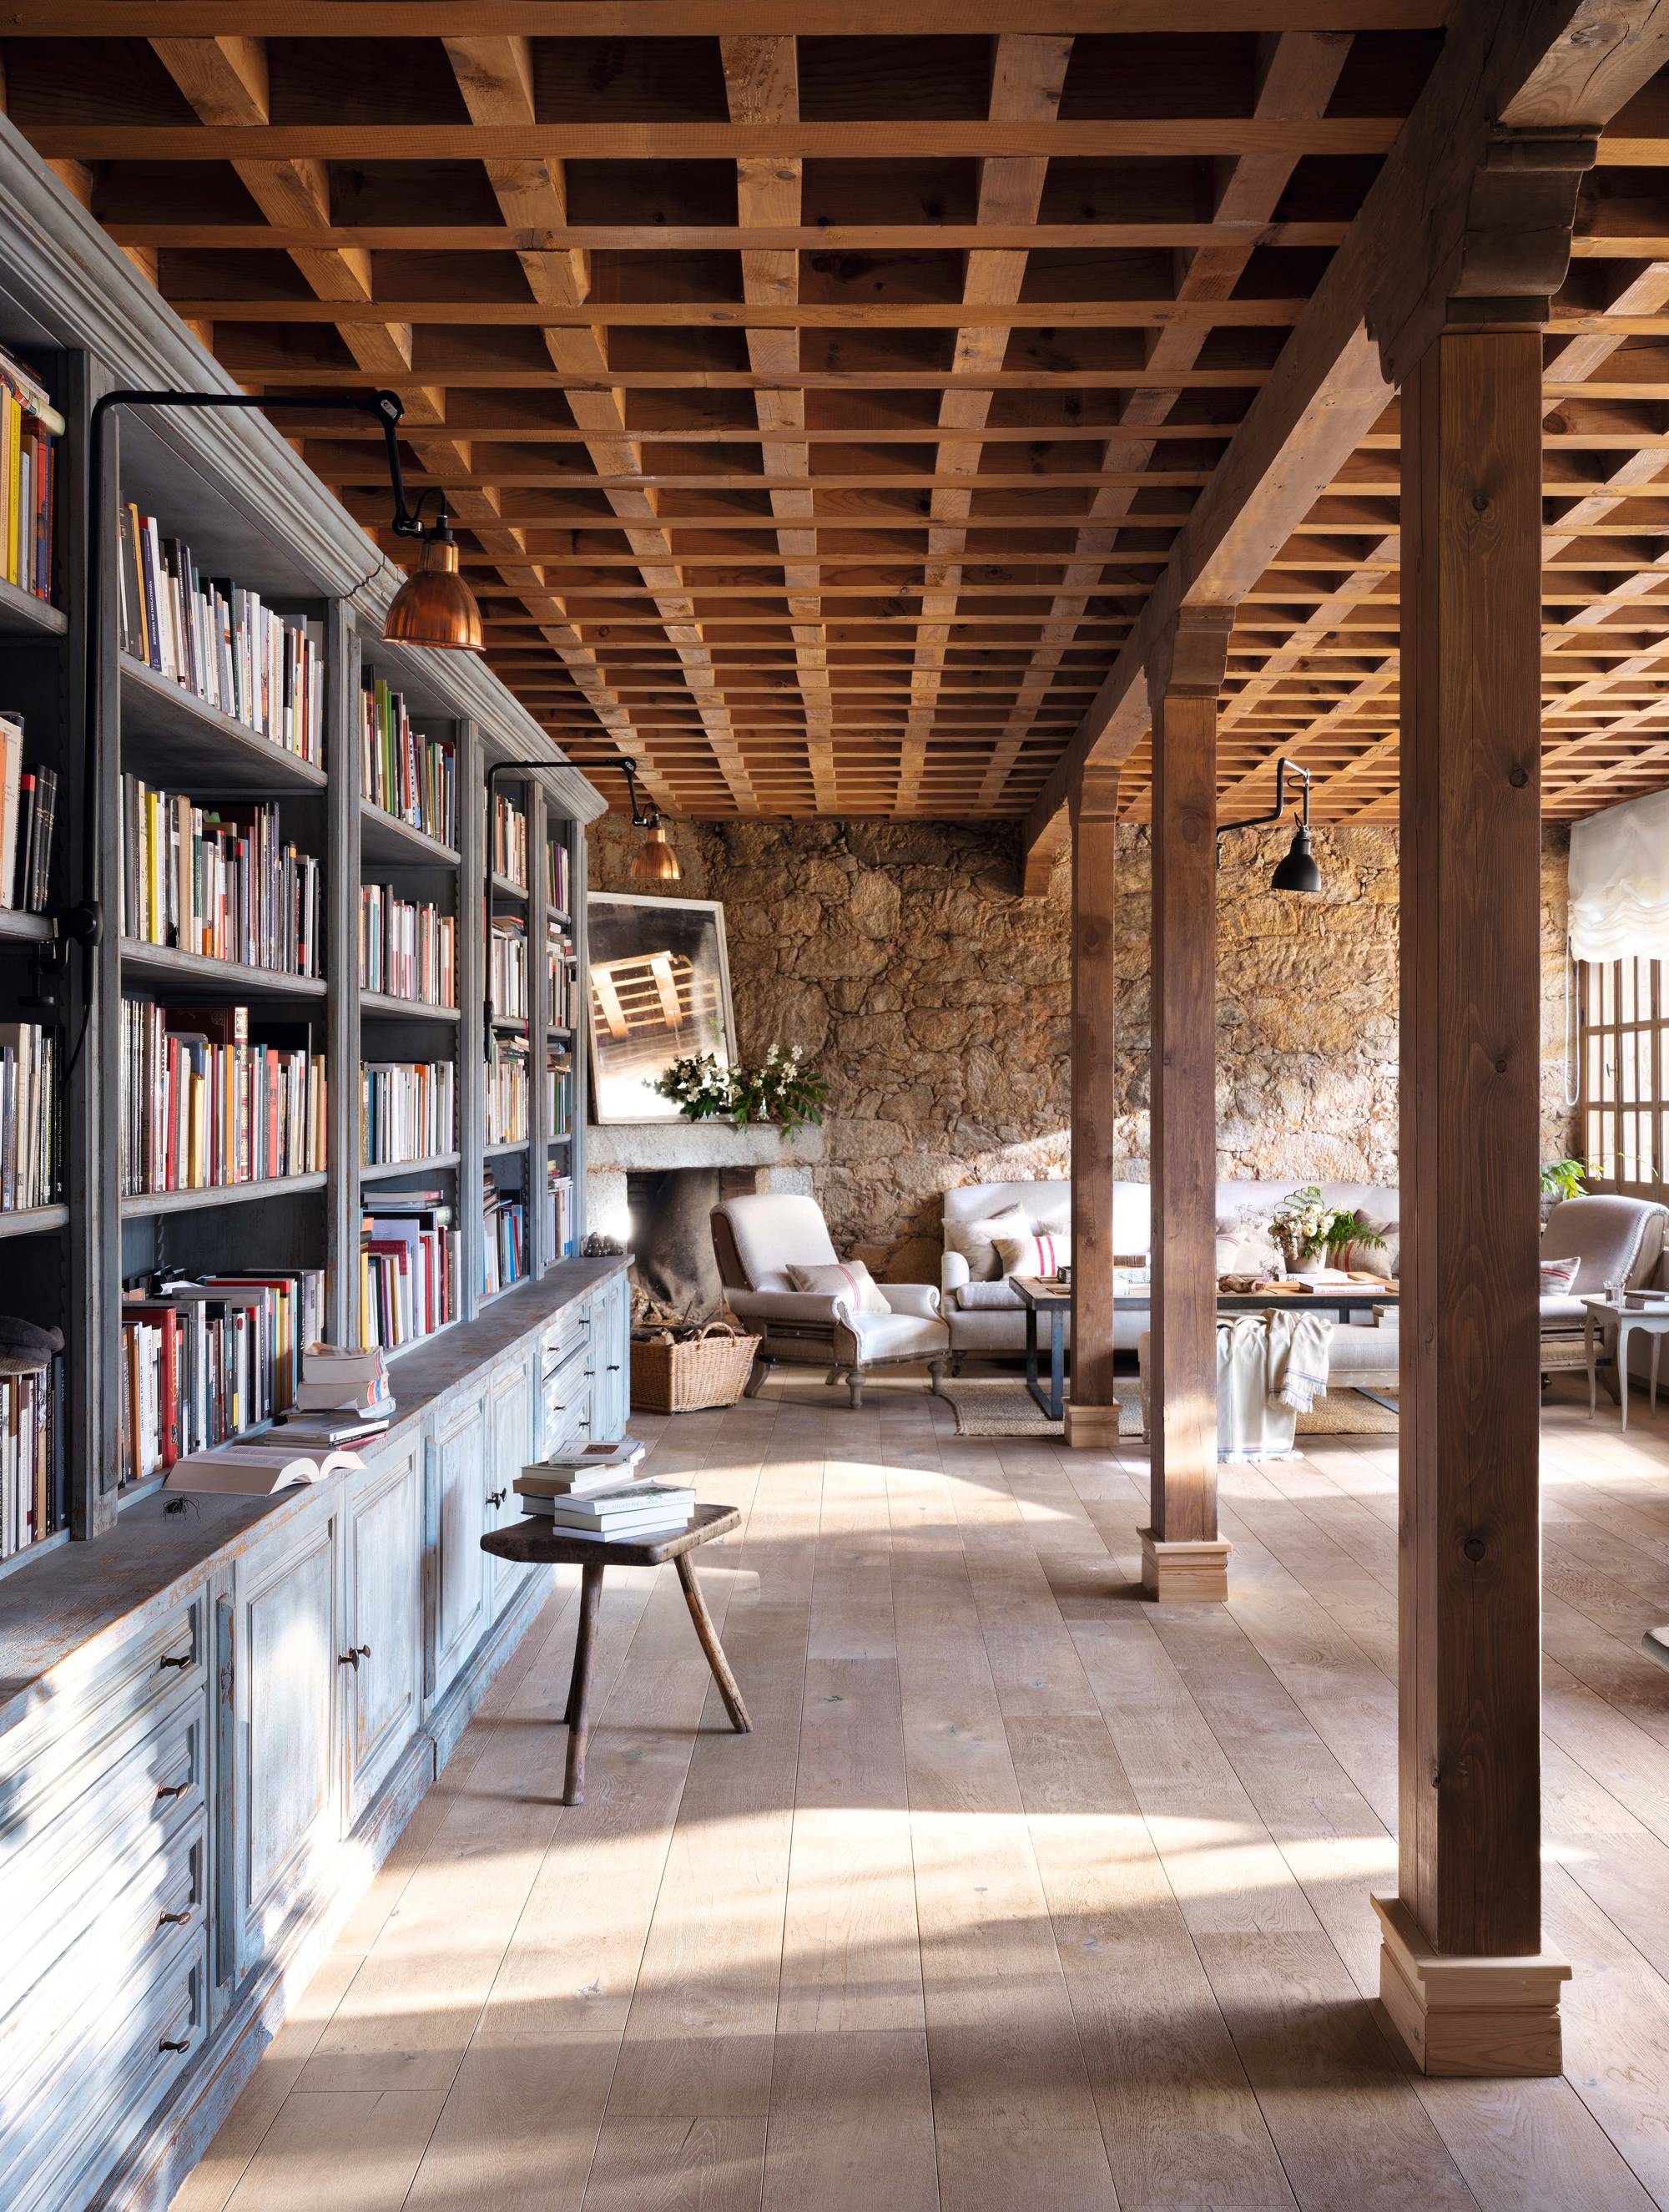 Salón con techo artesonado y librería extra larga a medida.